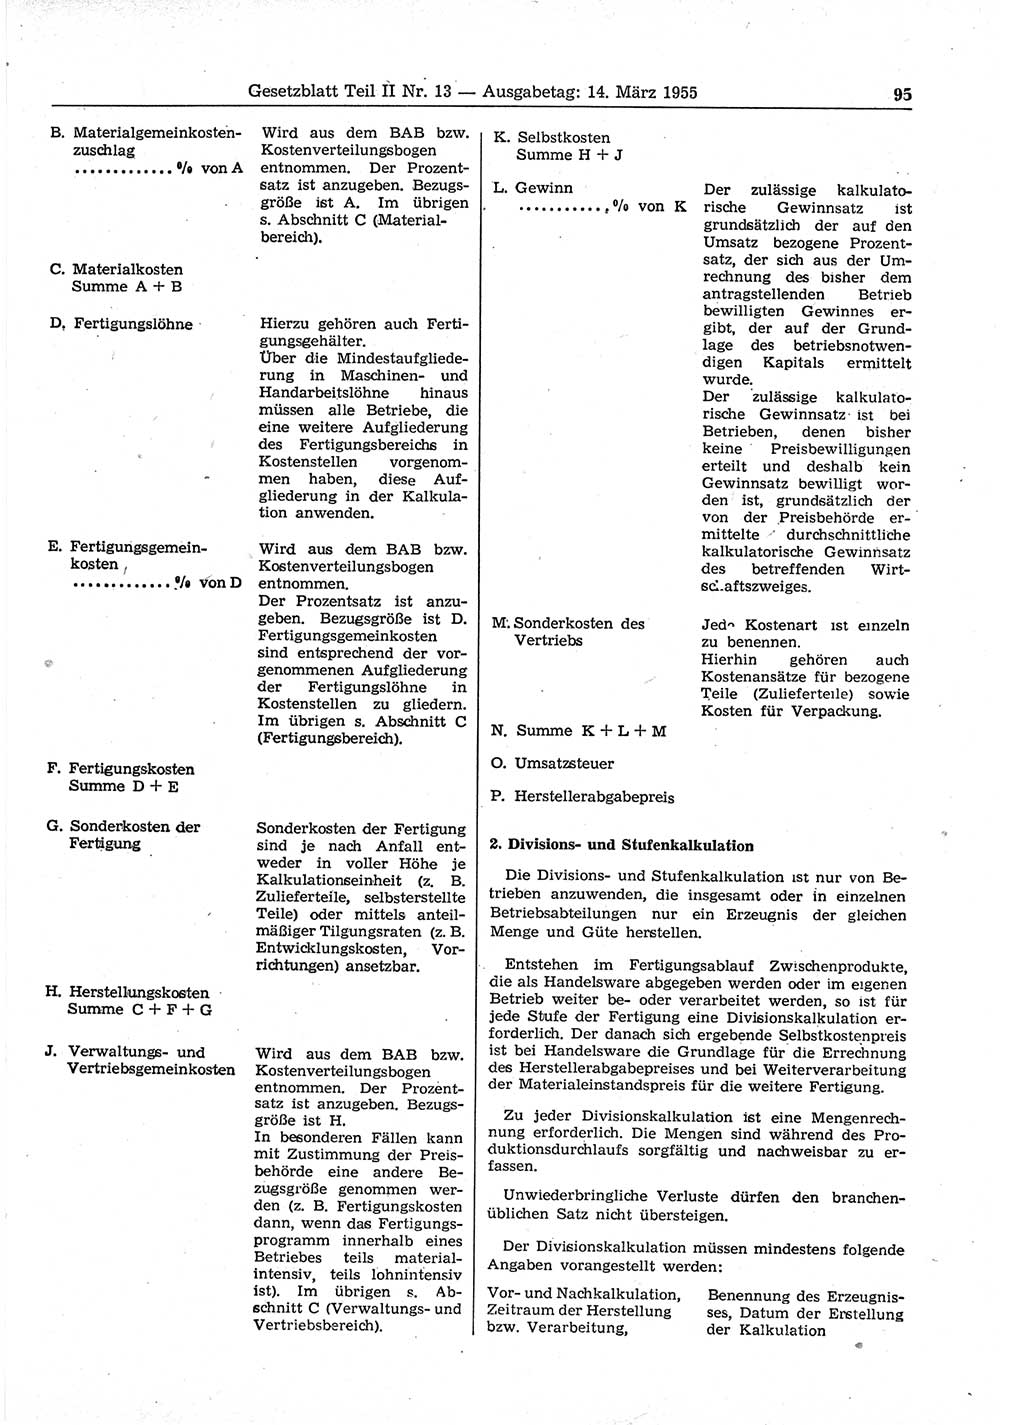 Gesetzblatt (GBl.) der Deutschen Demokratischen Republik (DDR) Teil ⅠⅠ 1955, Seite 95 (GBl. DDR ⅠⅠ 1955, S. 95)